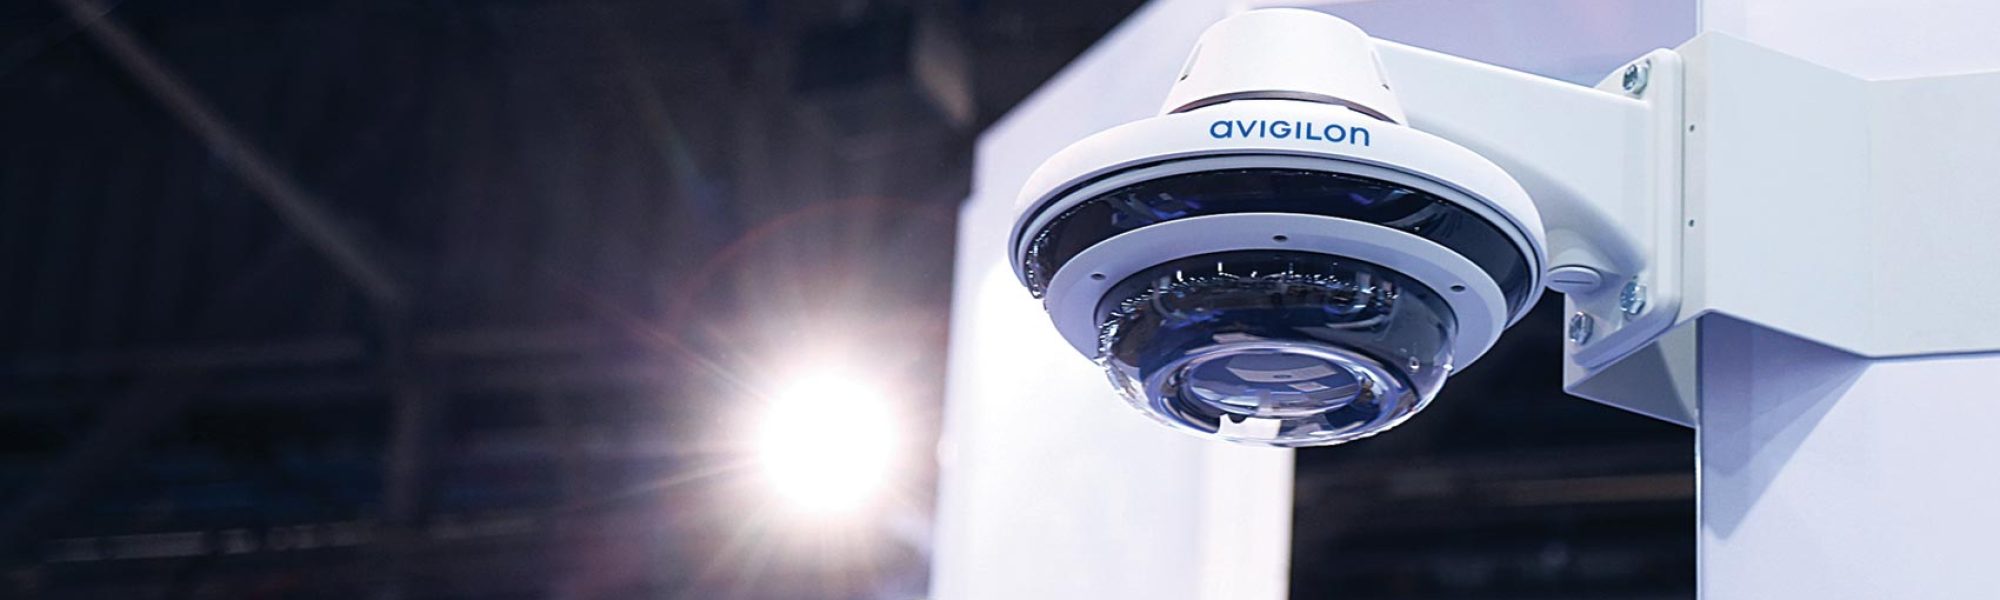 Avigilon-CCTV-Security-Systems-Installer-1-1-2